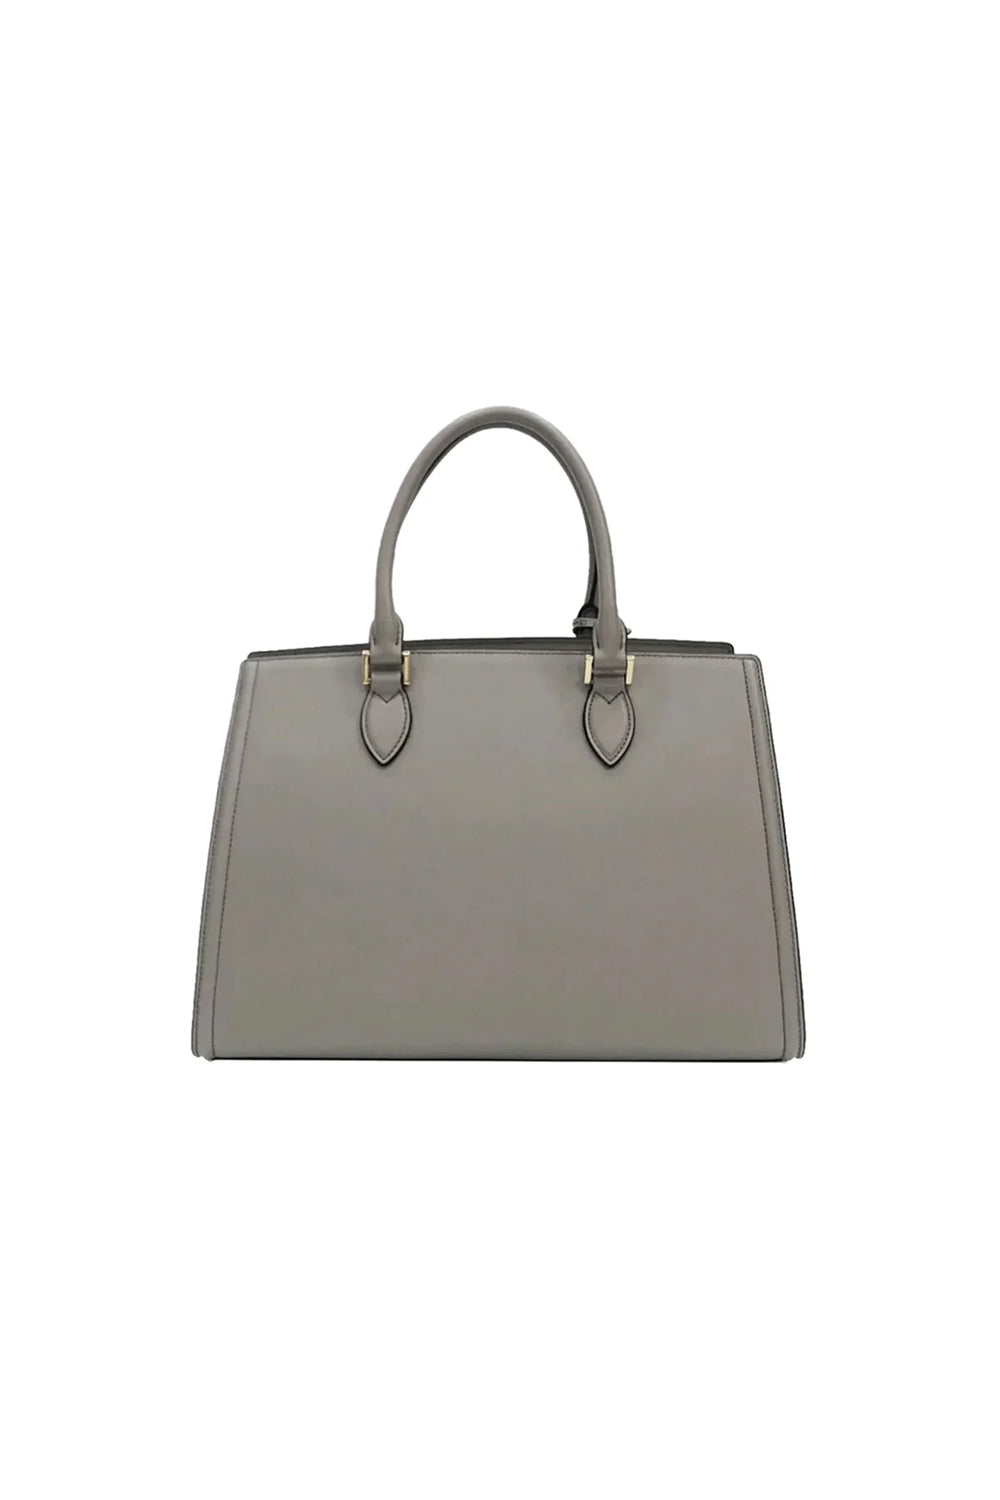 Prada Argilla Saffiano Lux Satchel Handbag